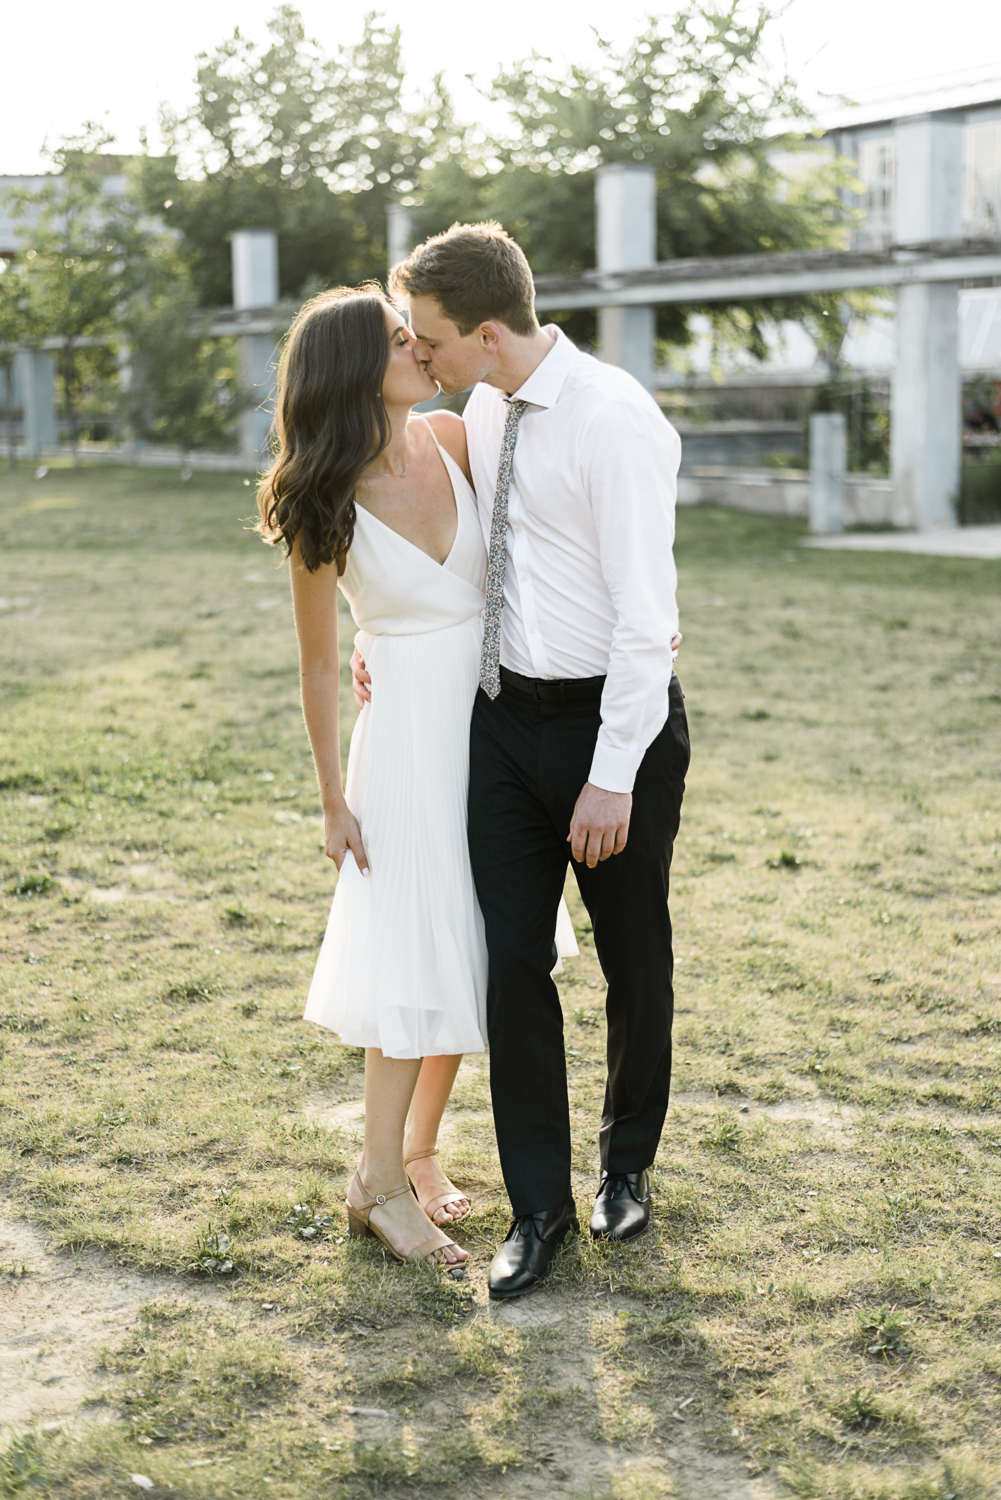 Girl in white dress kissing man in white shirt